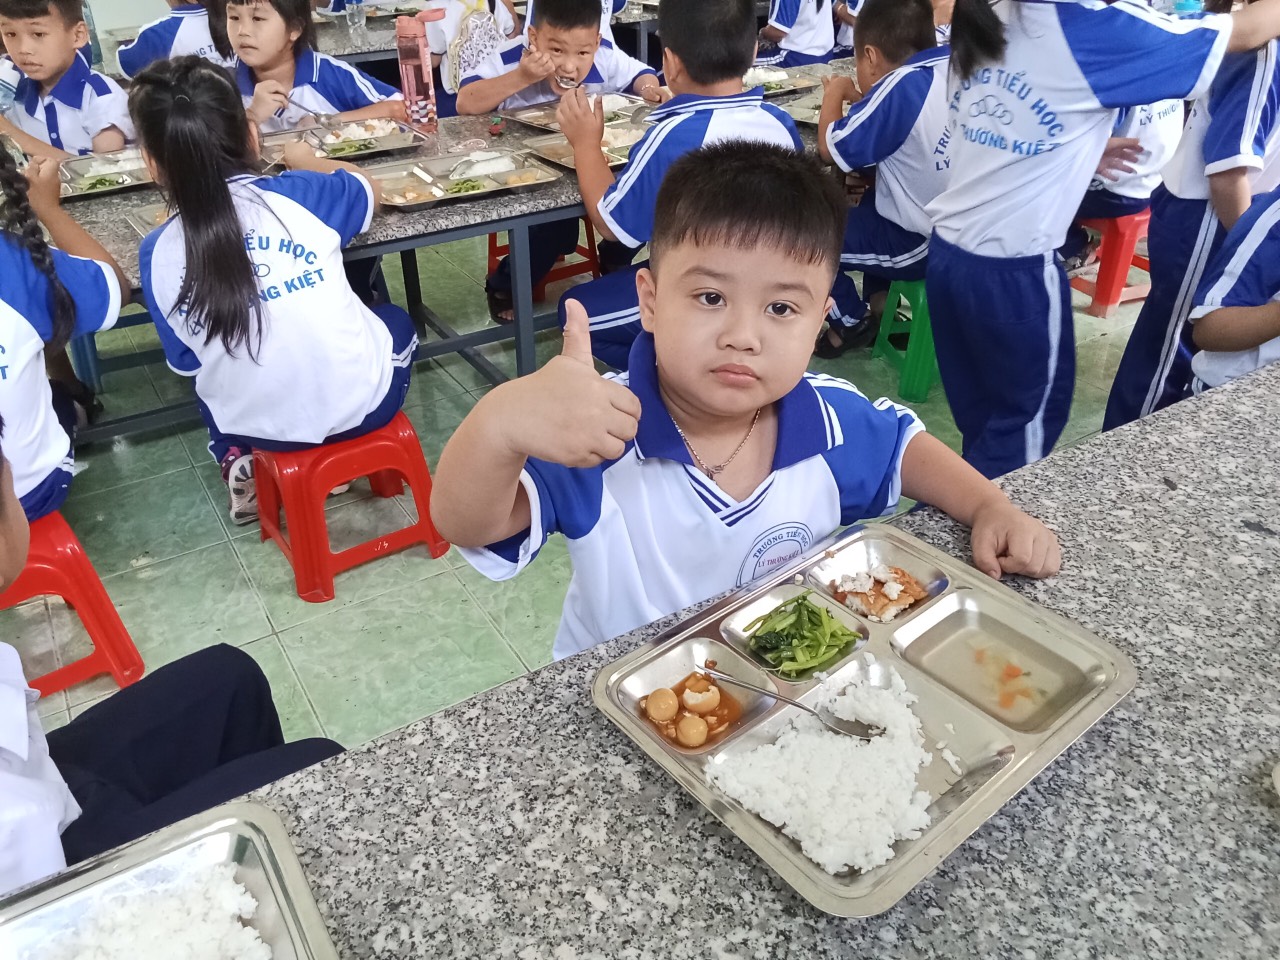 cung cấp suất ăn cho trường học tại Phú Mỹ